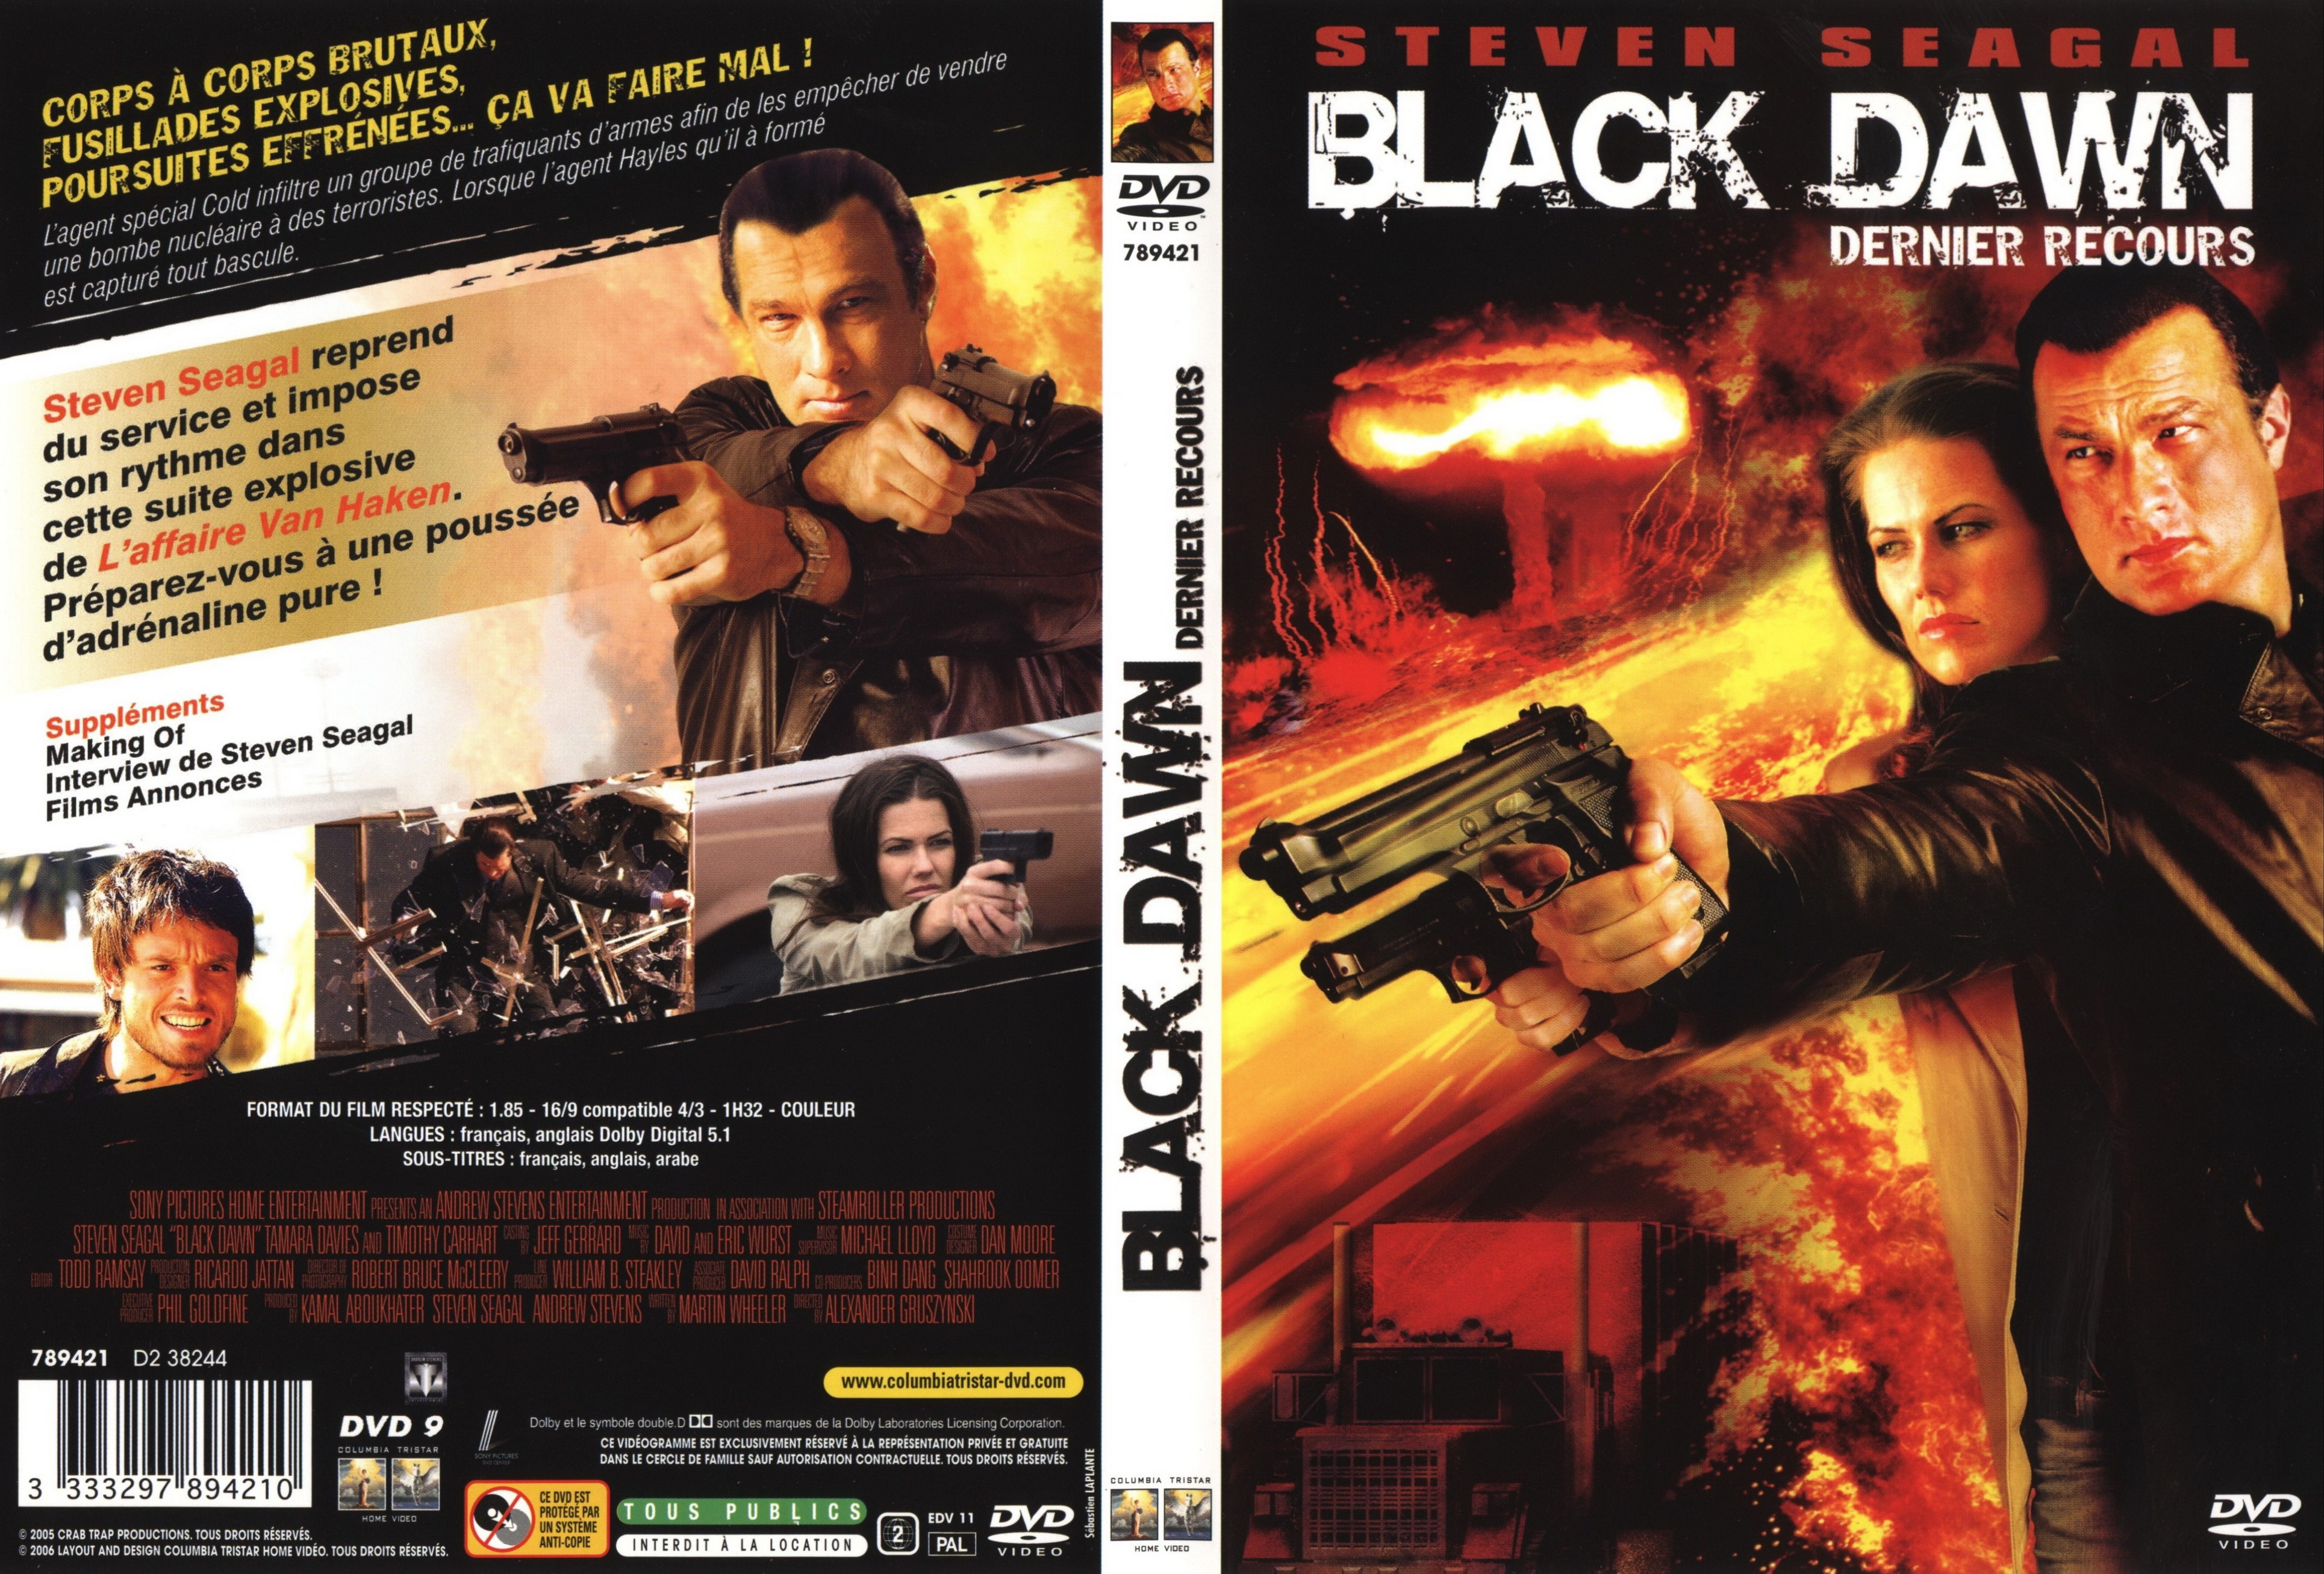 Jaquette DVD Black dawn - Dernier recours